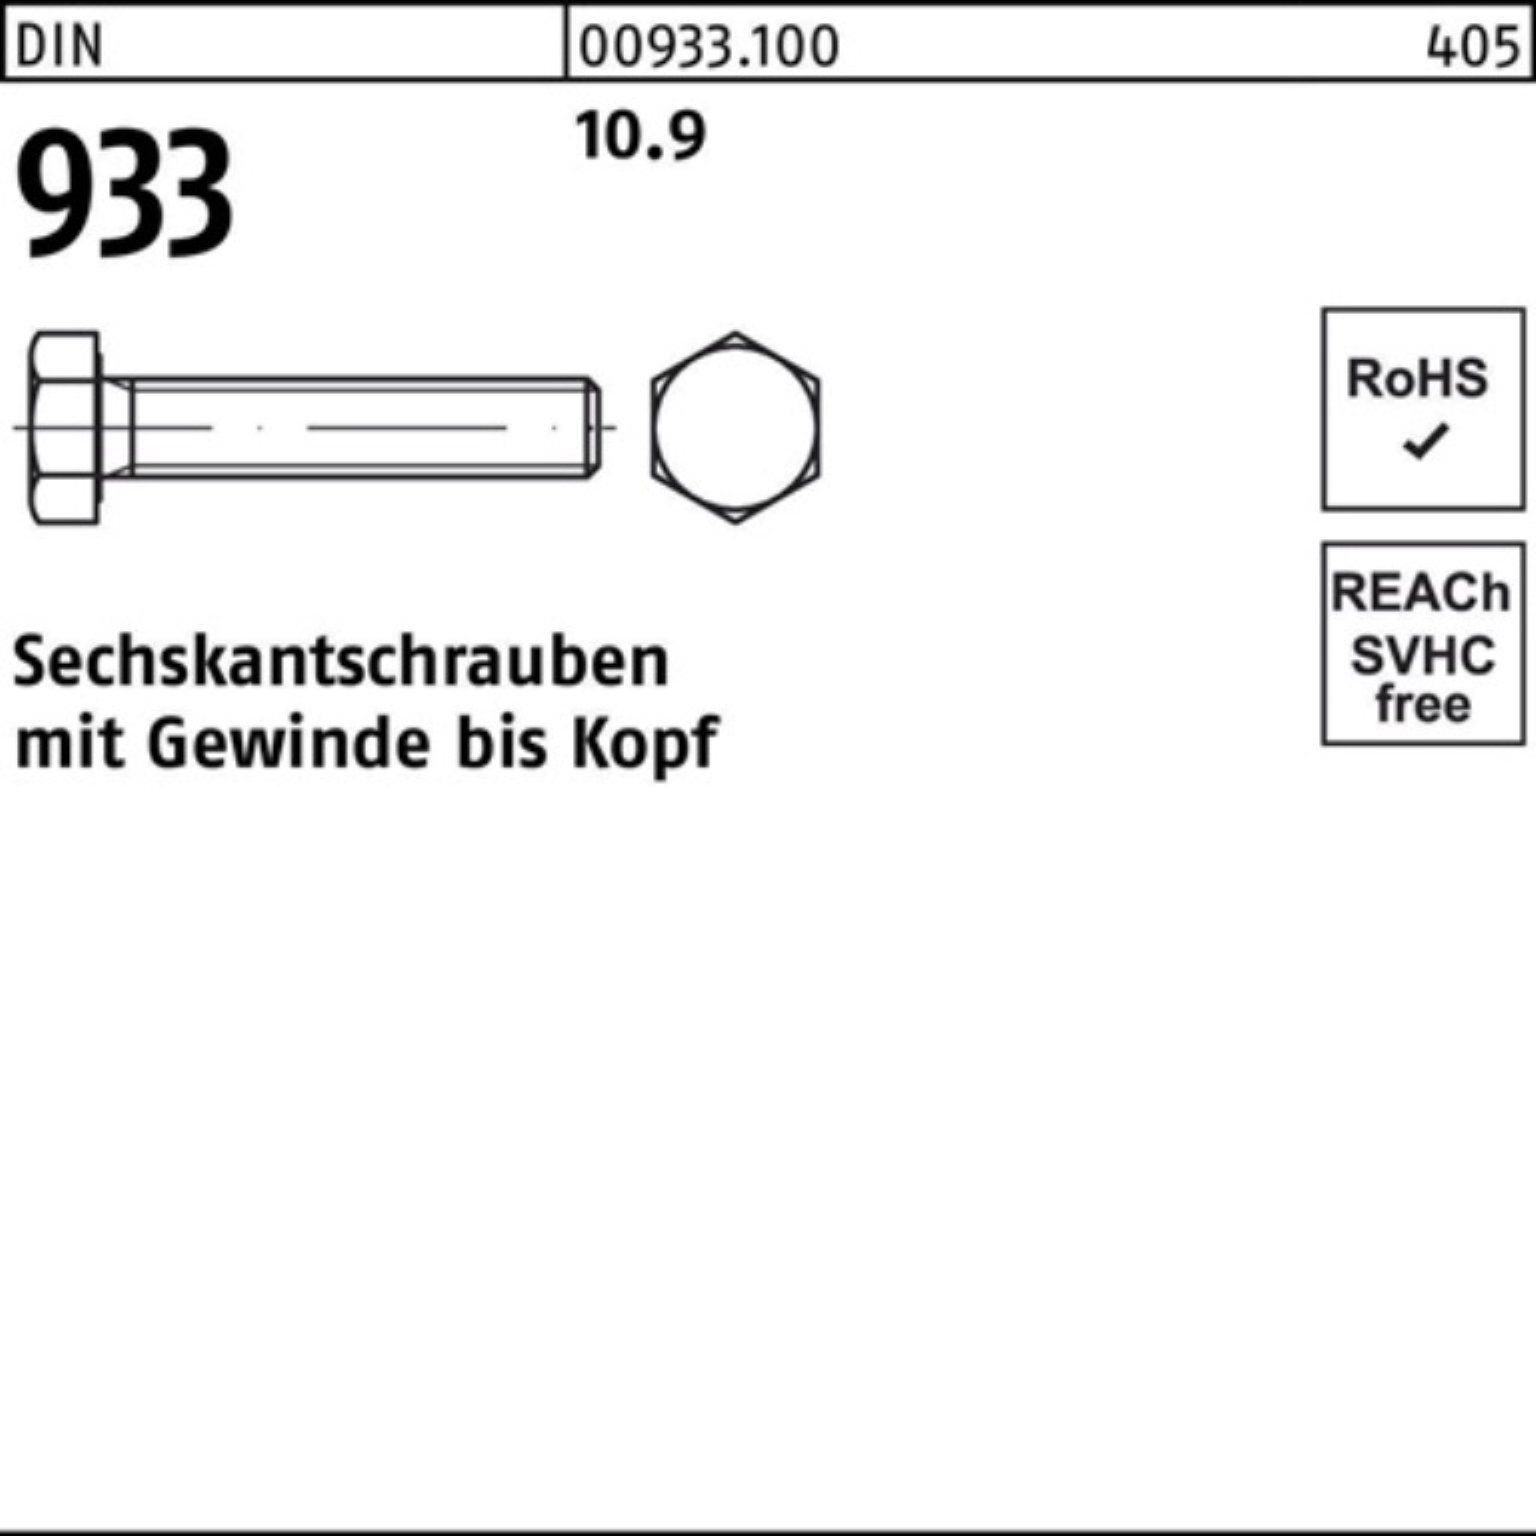 Reyher Sechskantschraube 100er 1 Sechskantschraube Pack DIN VG 933 Stück 90 DIN 933 10.9 M30x